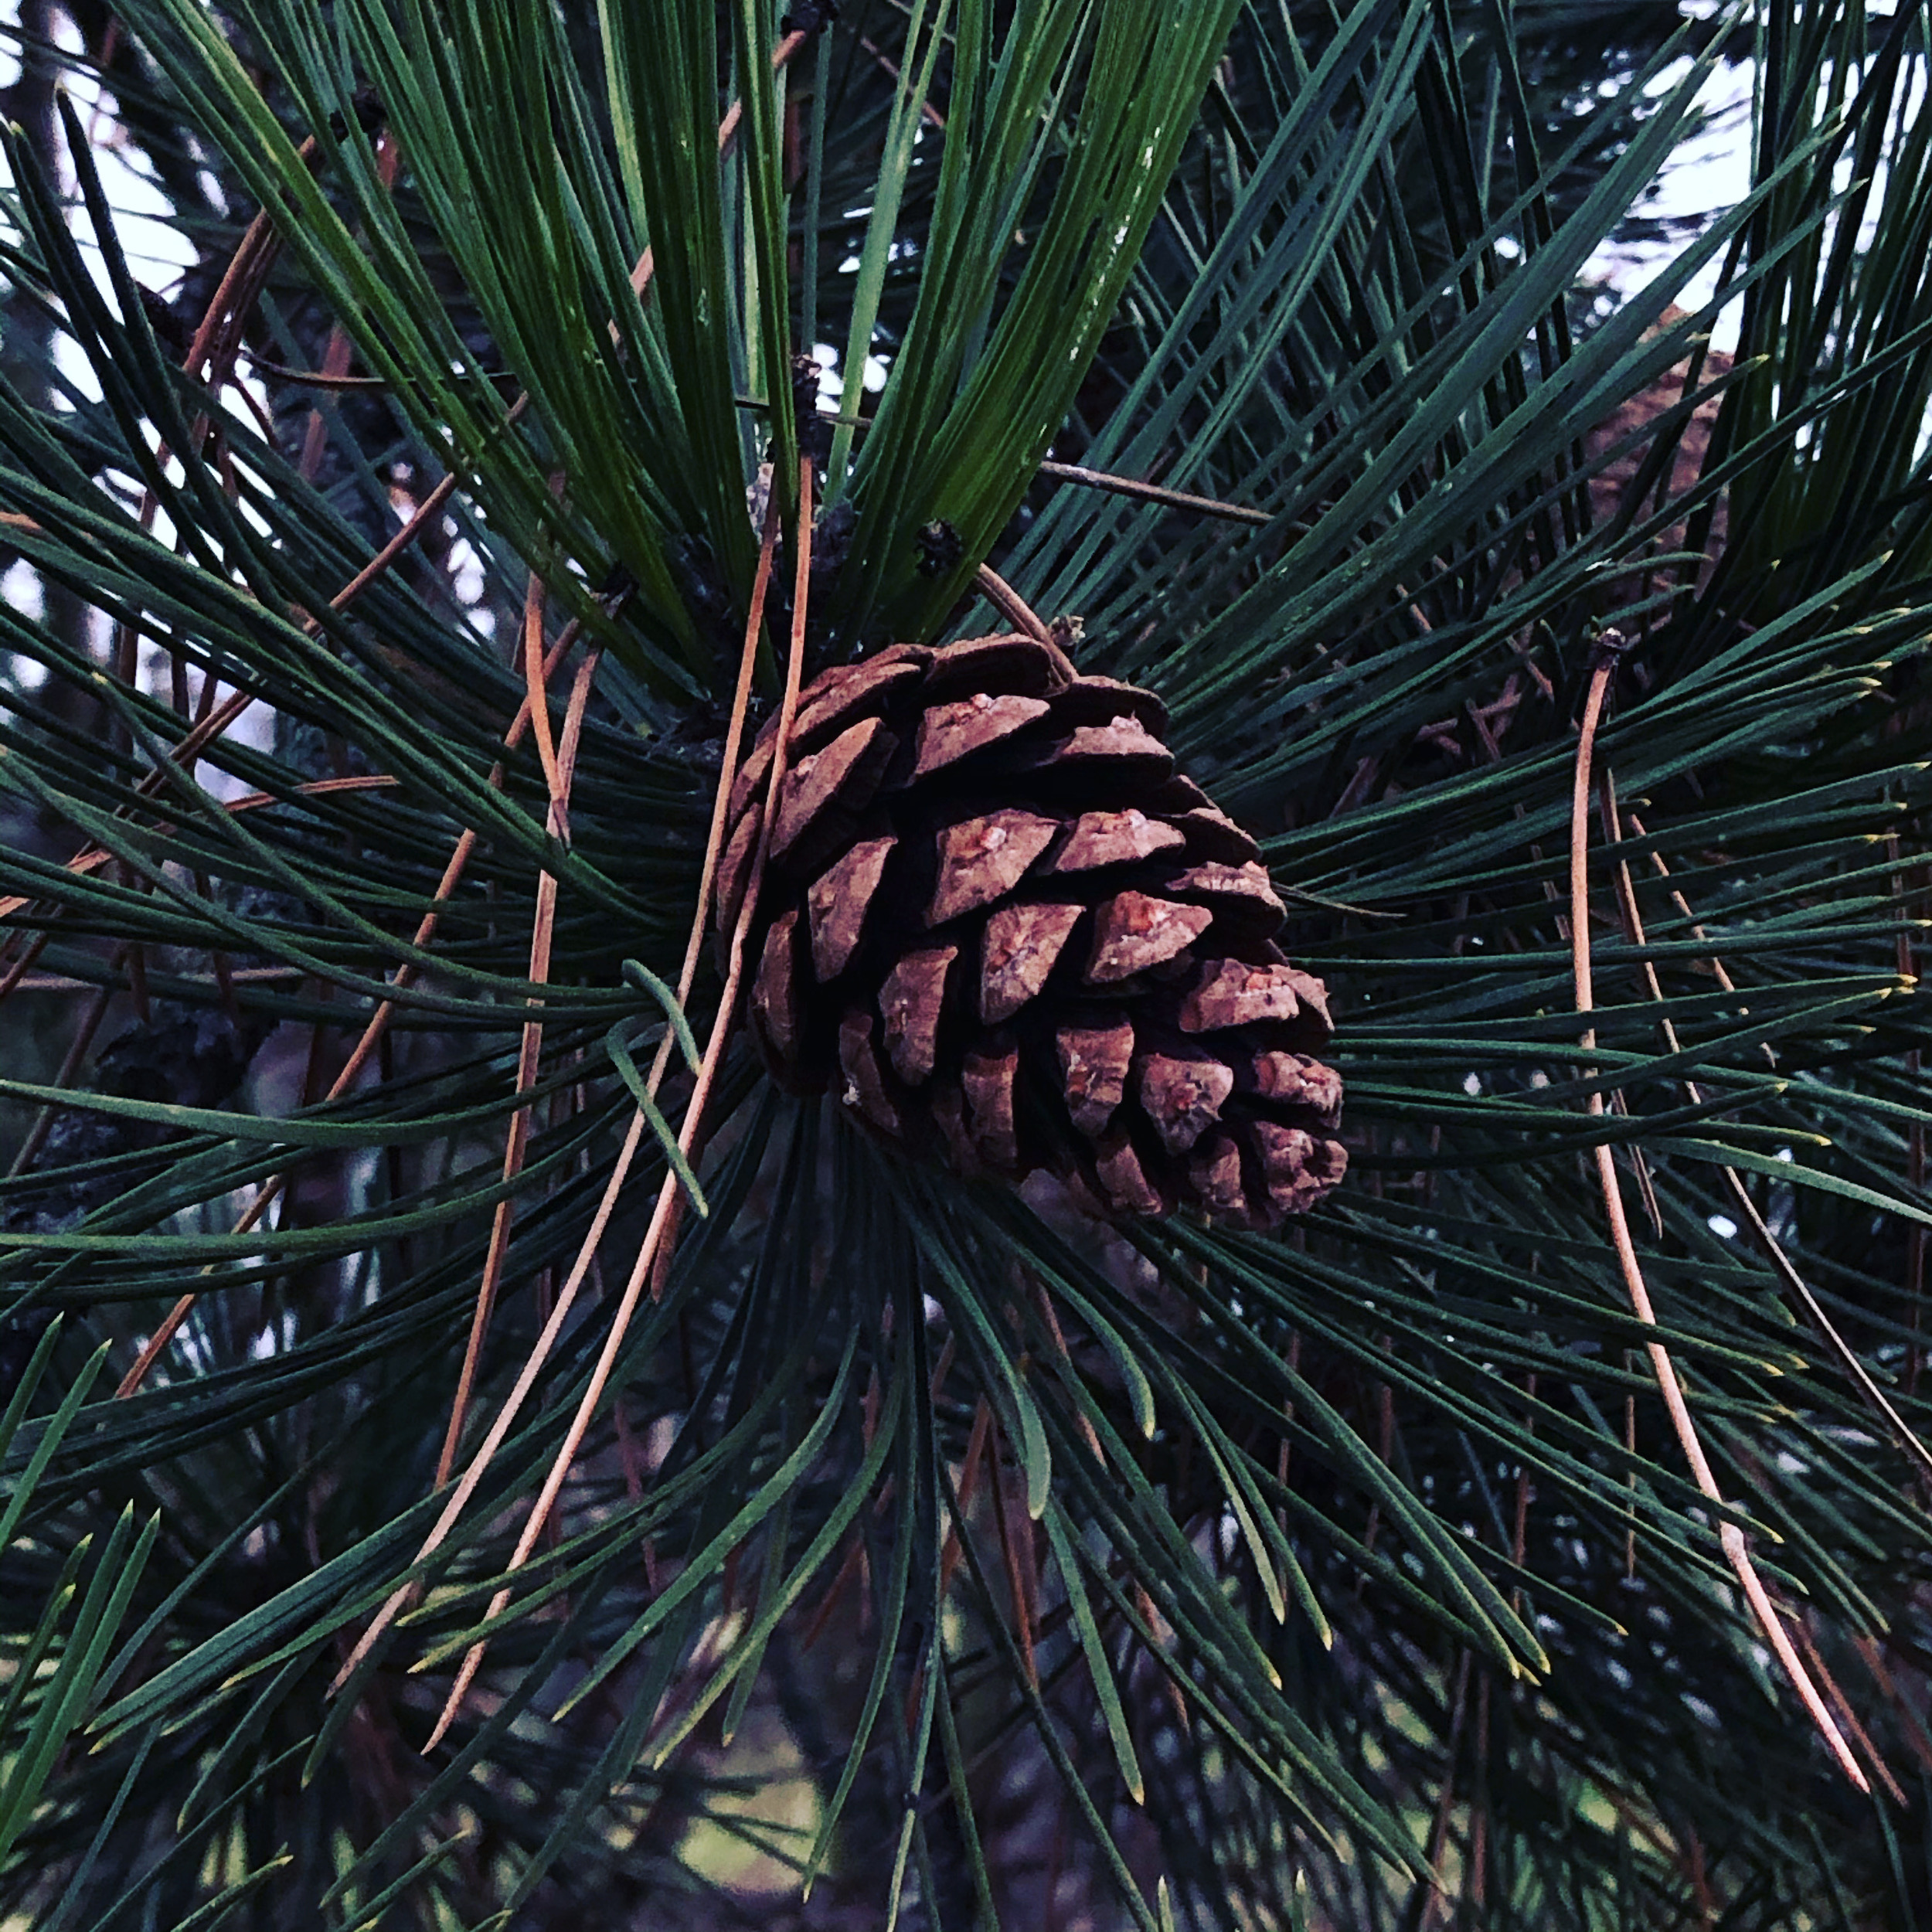 The pine cone